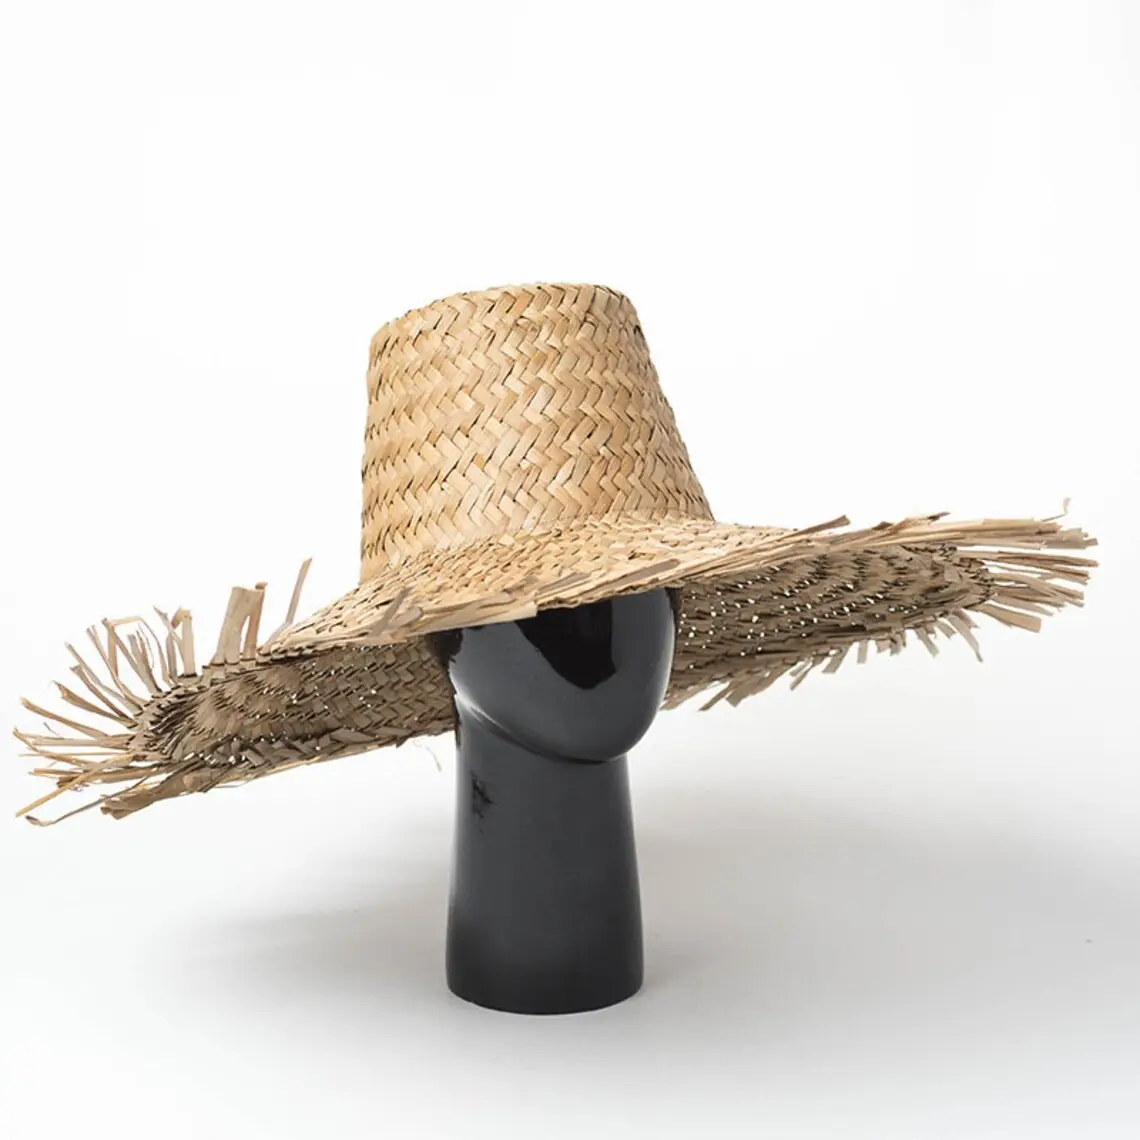 หมวกหญ้าทะเลปีกกว้างสำหรับผู้หญิง,หมวกฟางหญ้าทะเลเป็นมิตรต่อสิ่งแวดล้อมธรรมชาติสำหรับฤดูร้อน